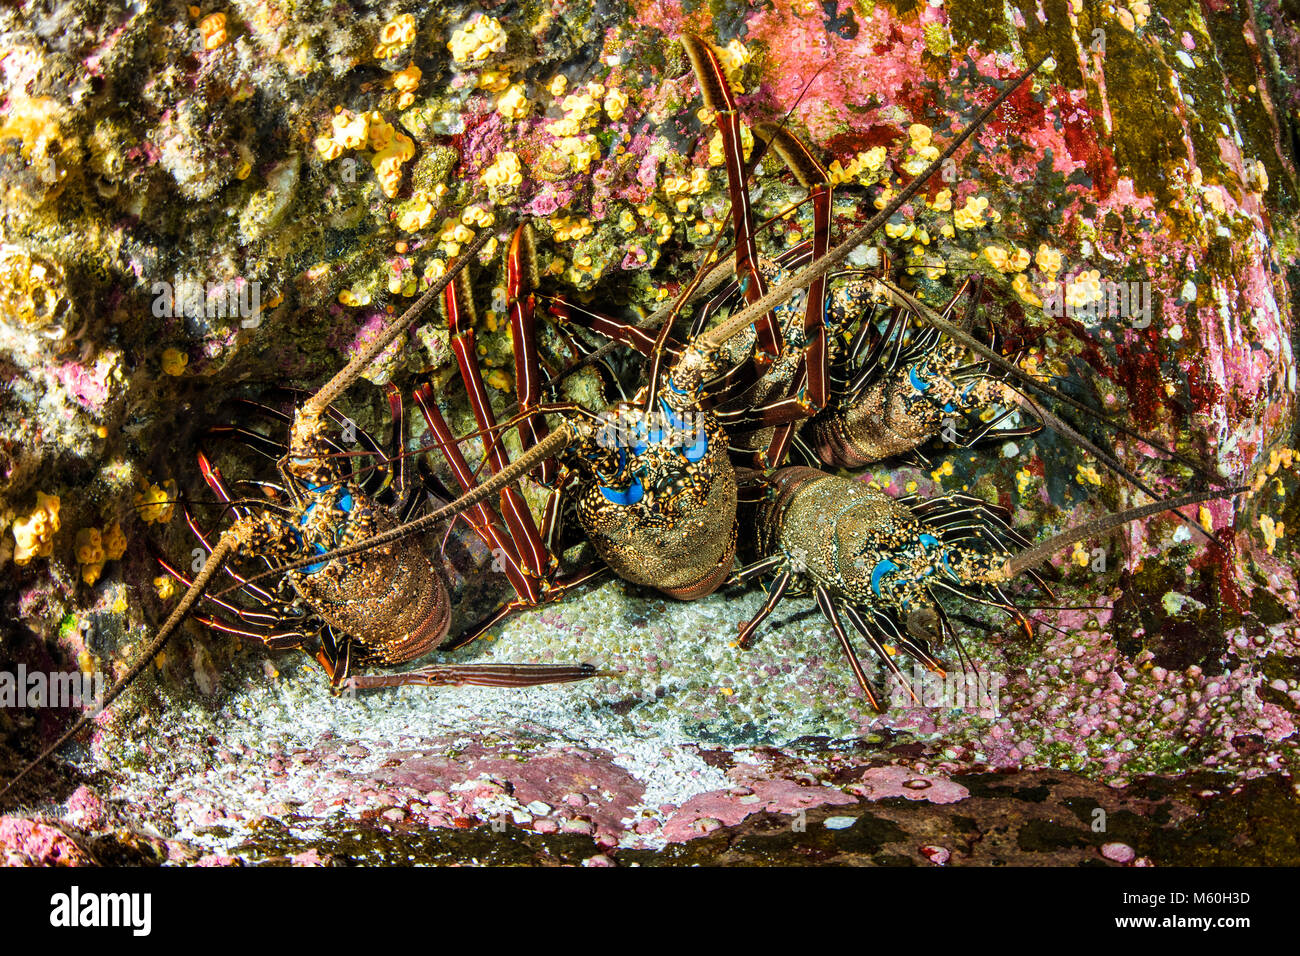 Groupe de langouste, Panulirus penicillatus, Socorro Island, Îles Revillagigedo, Mexique Banque D'Images